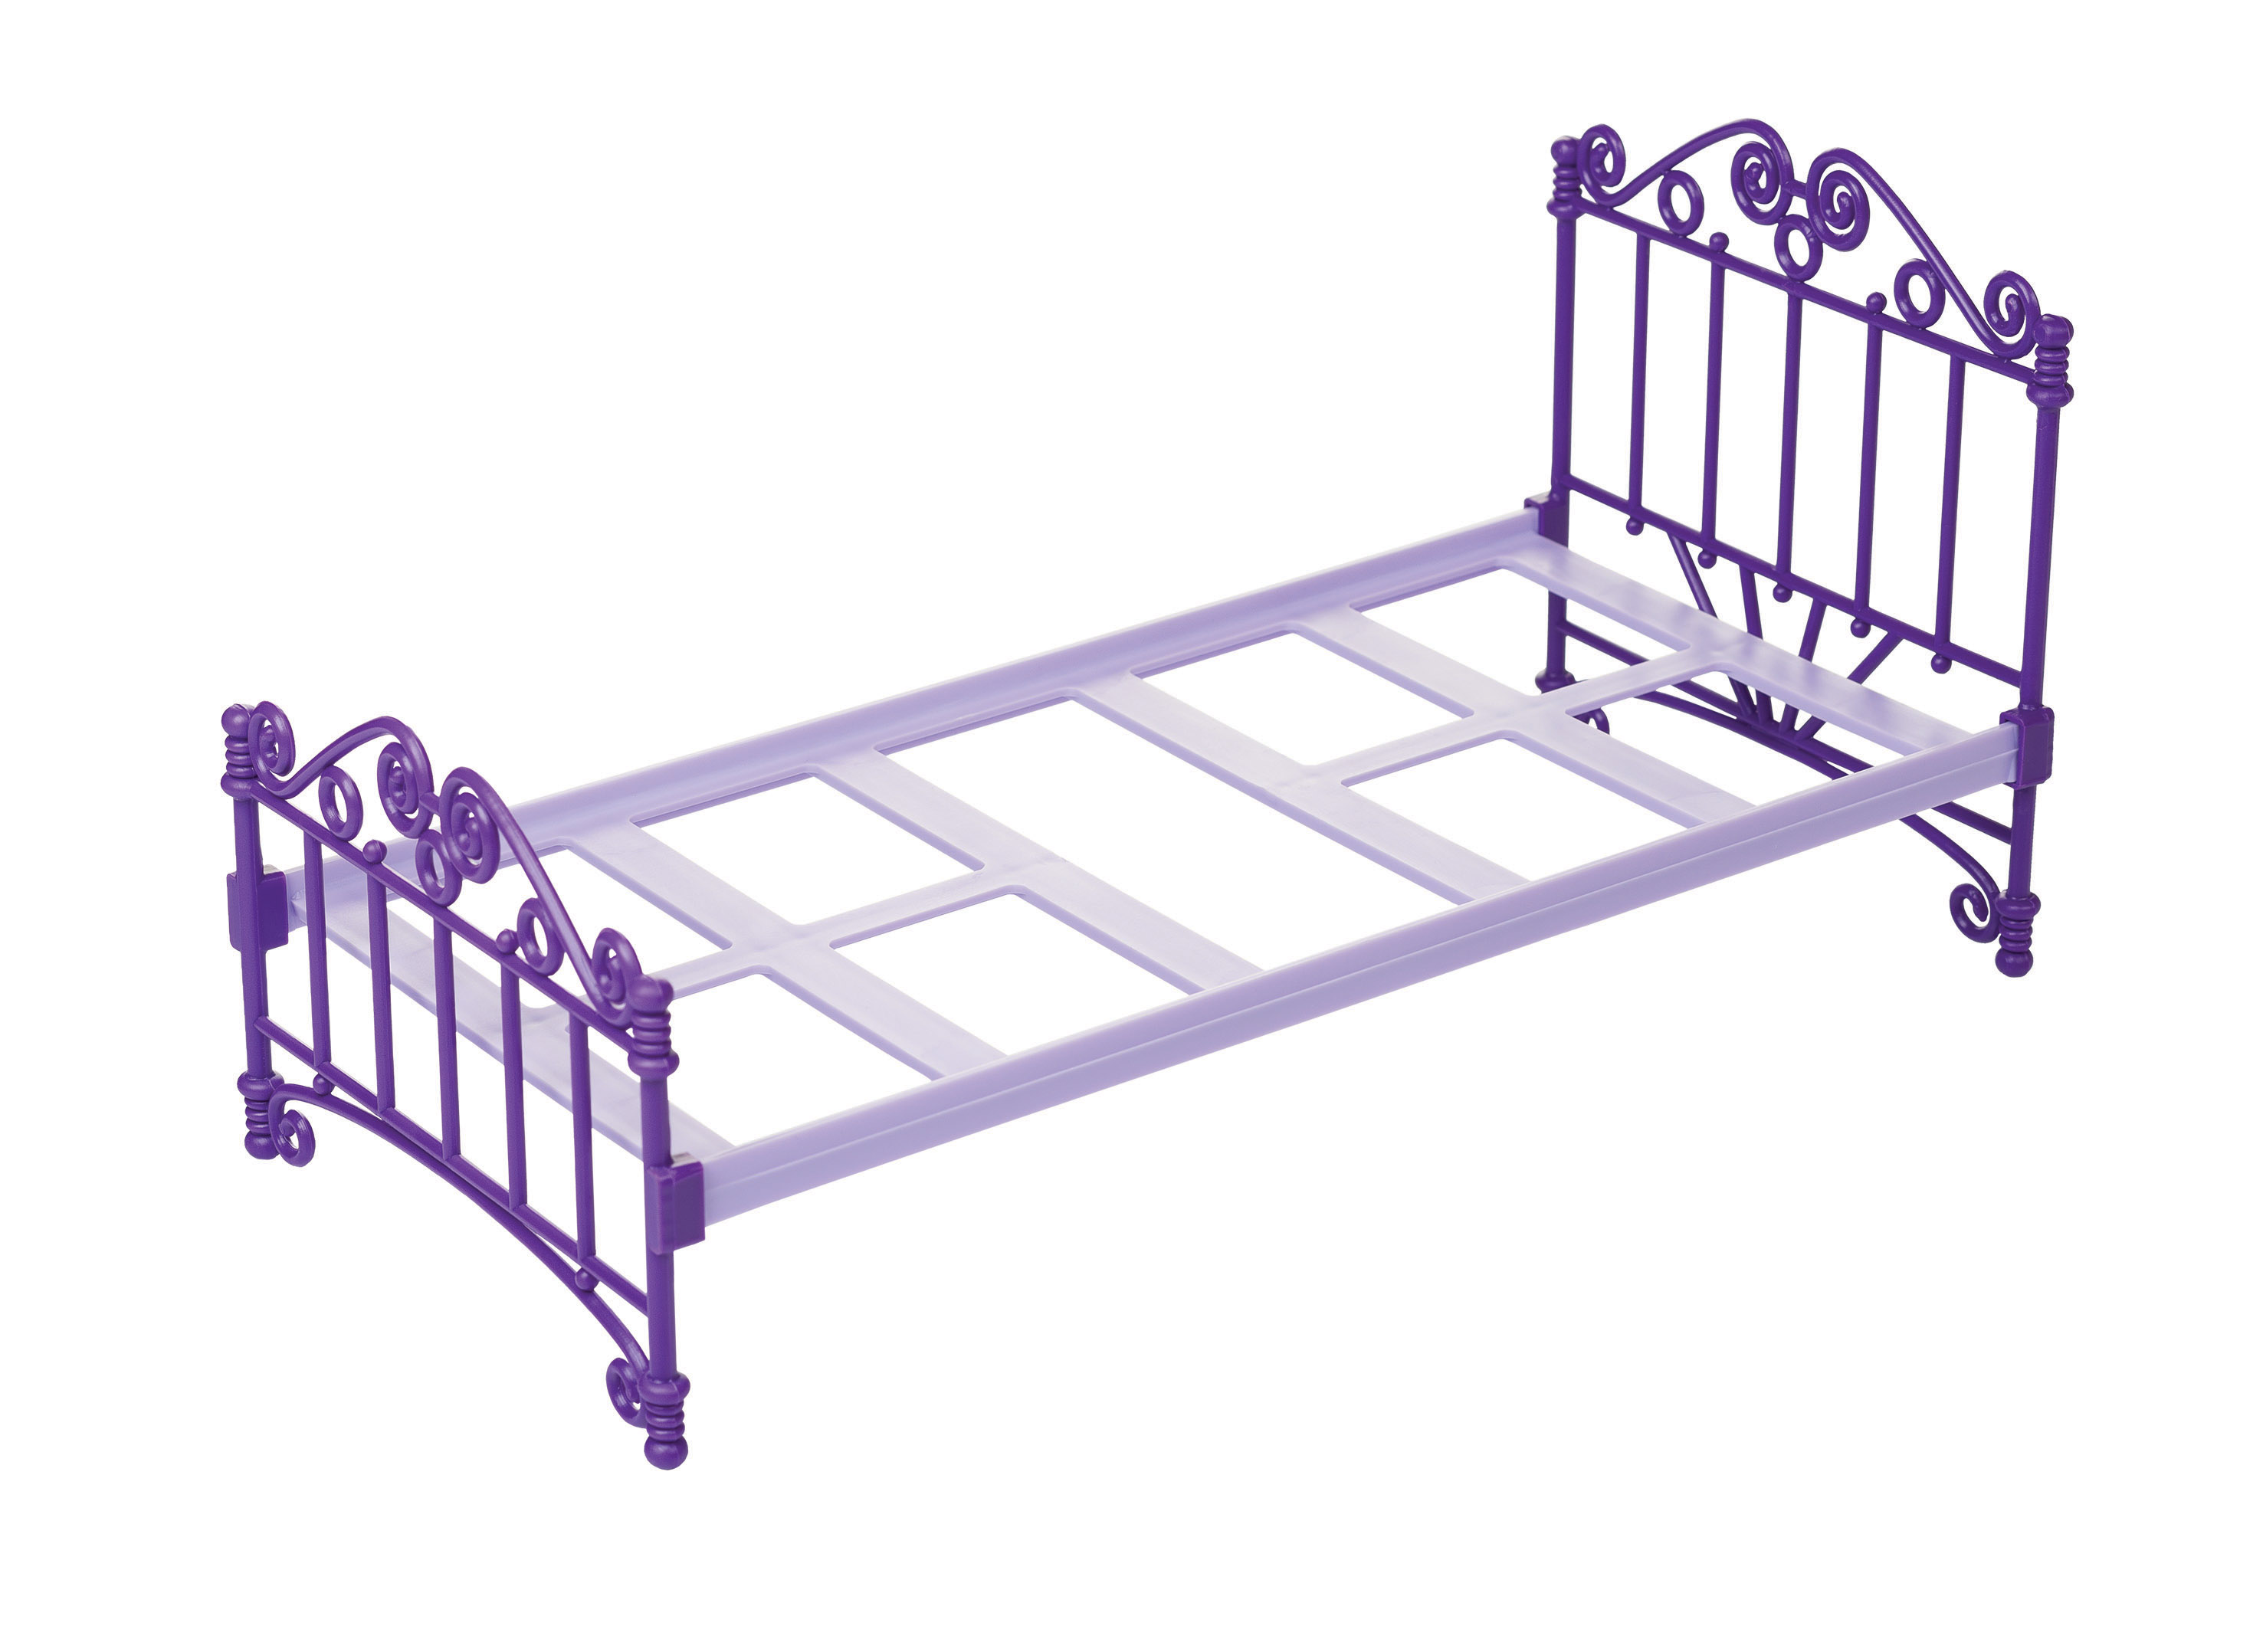 Кроватка фиолетовая с постельным бельем